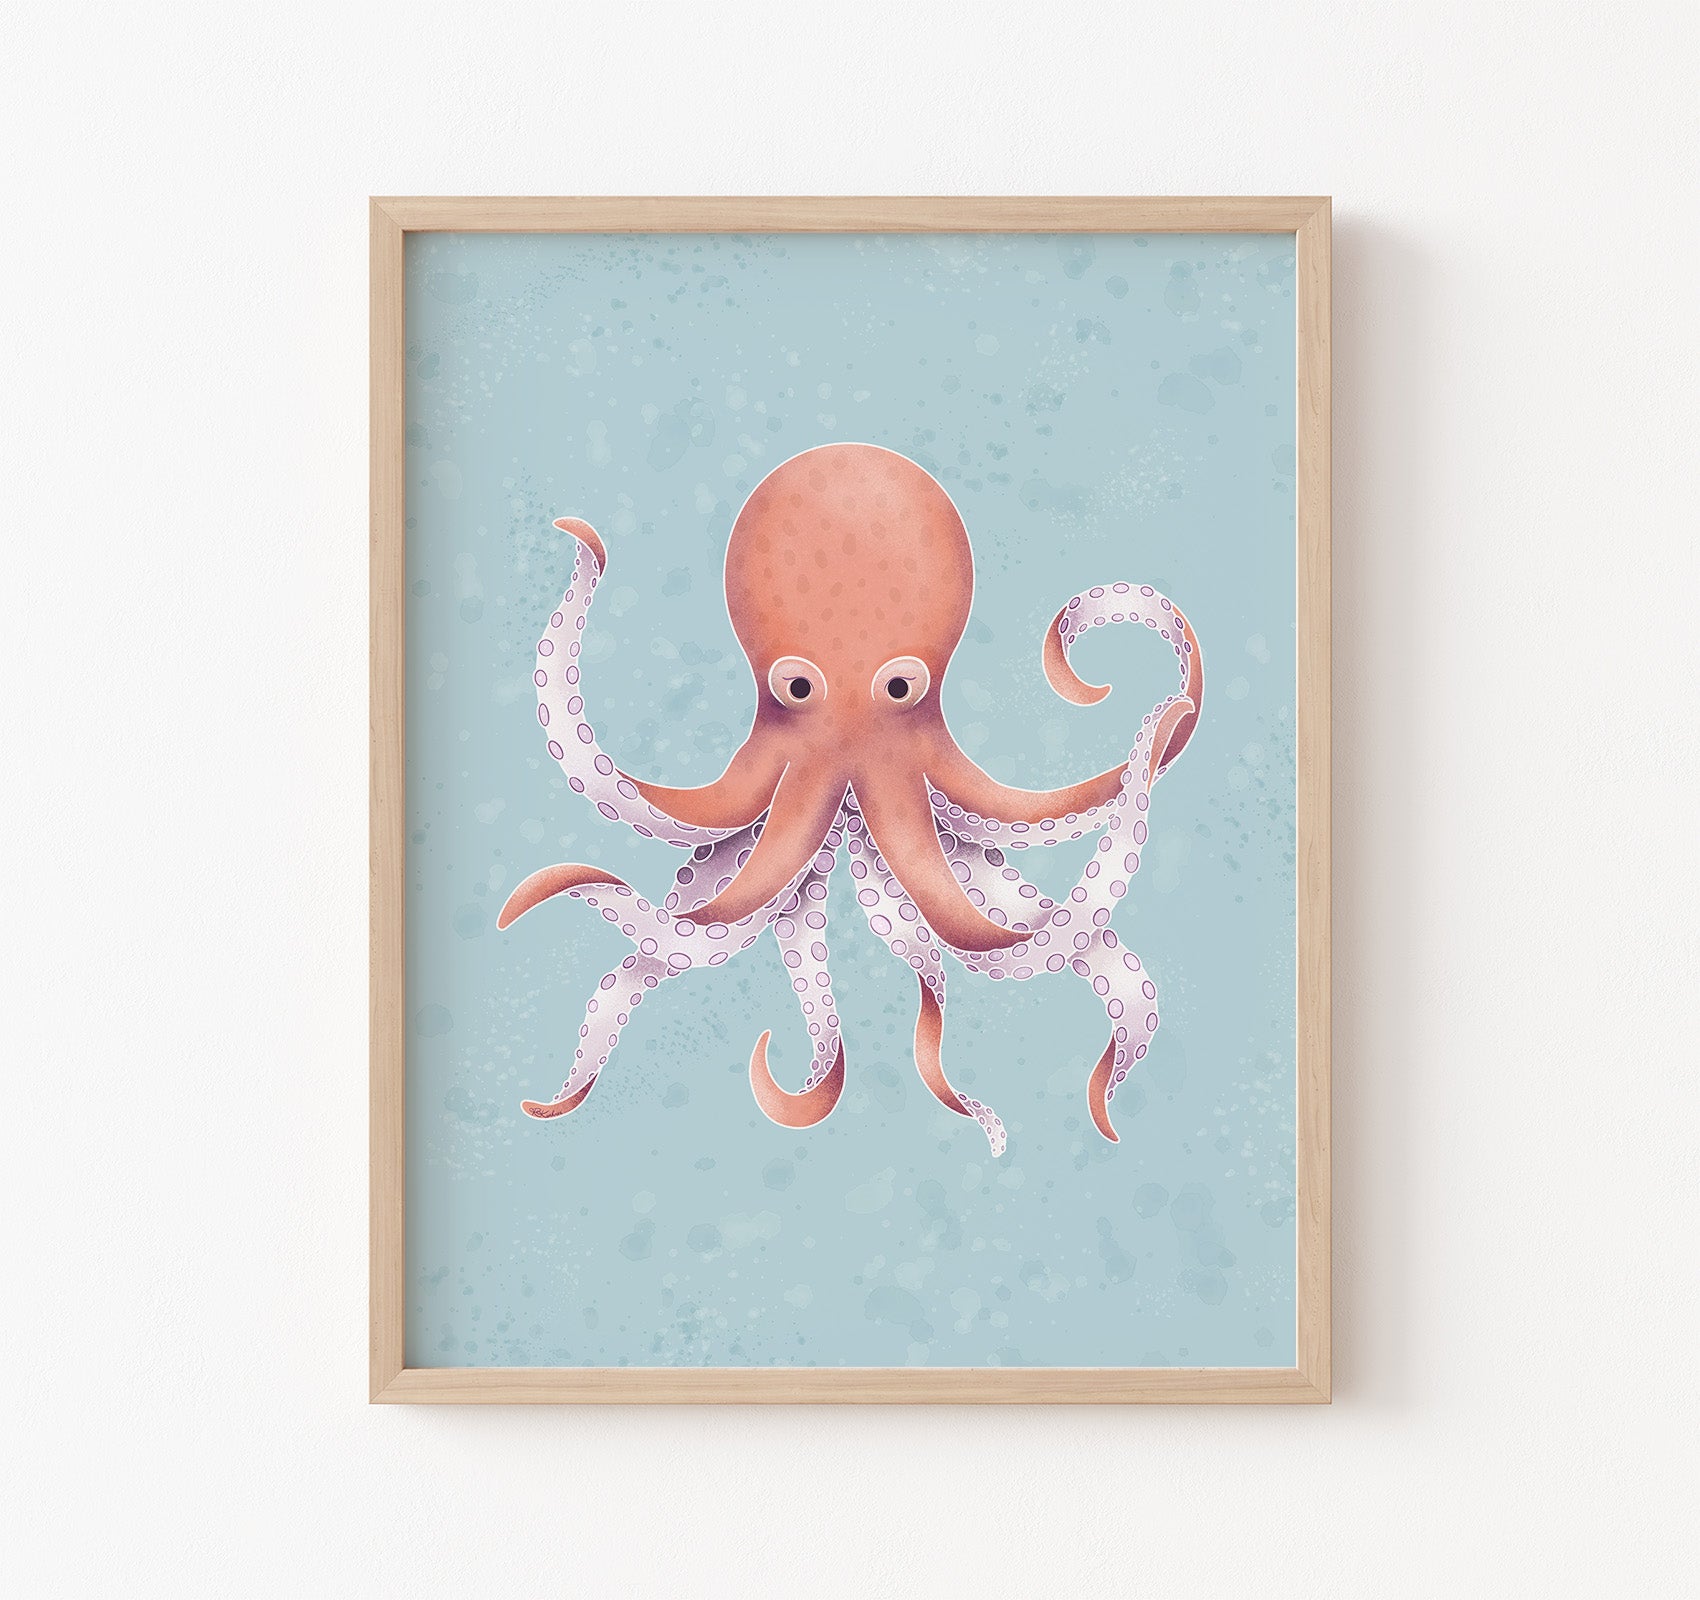 An ocean theme art print of an octopus on a blue background